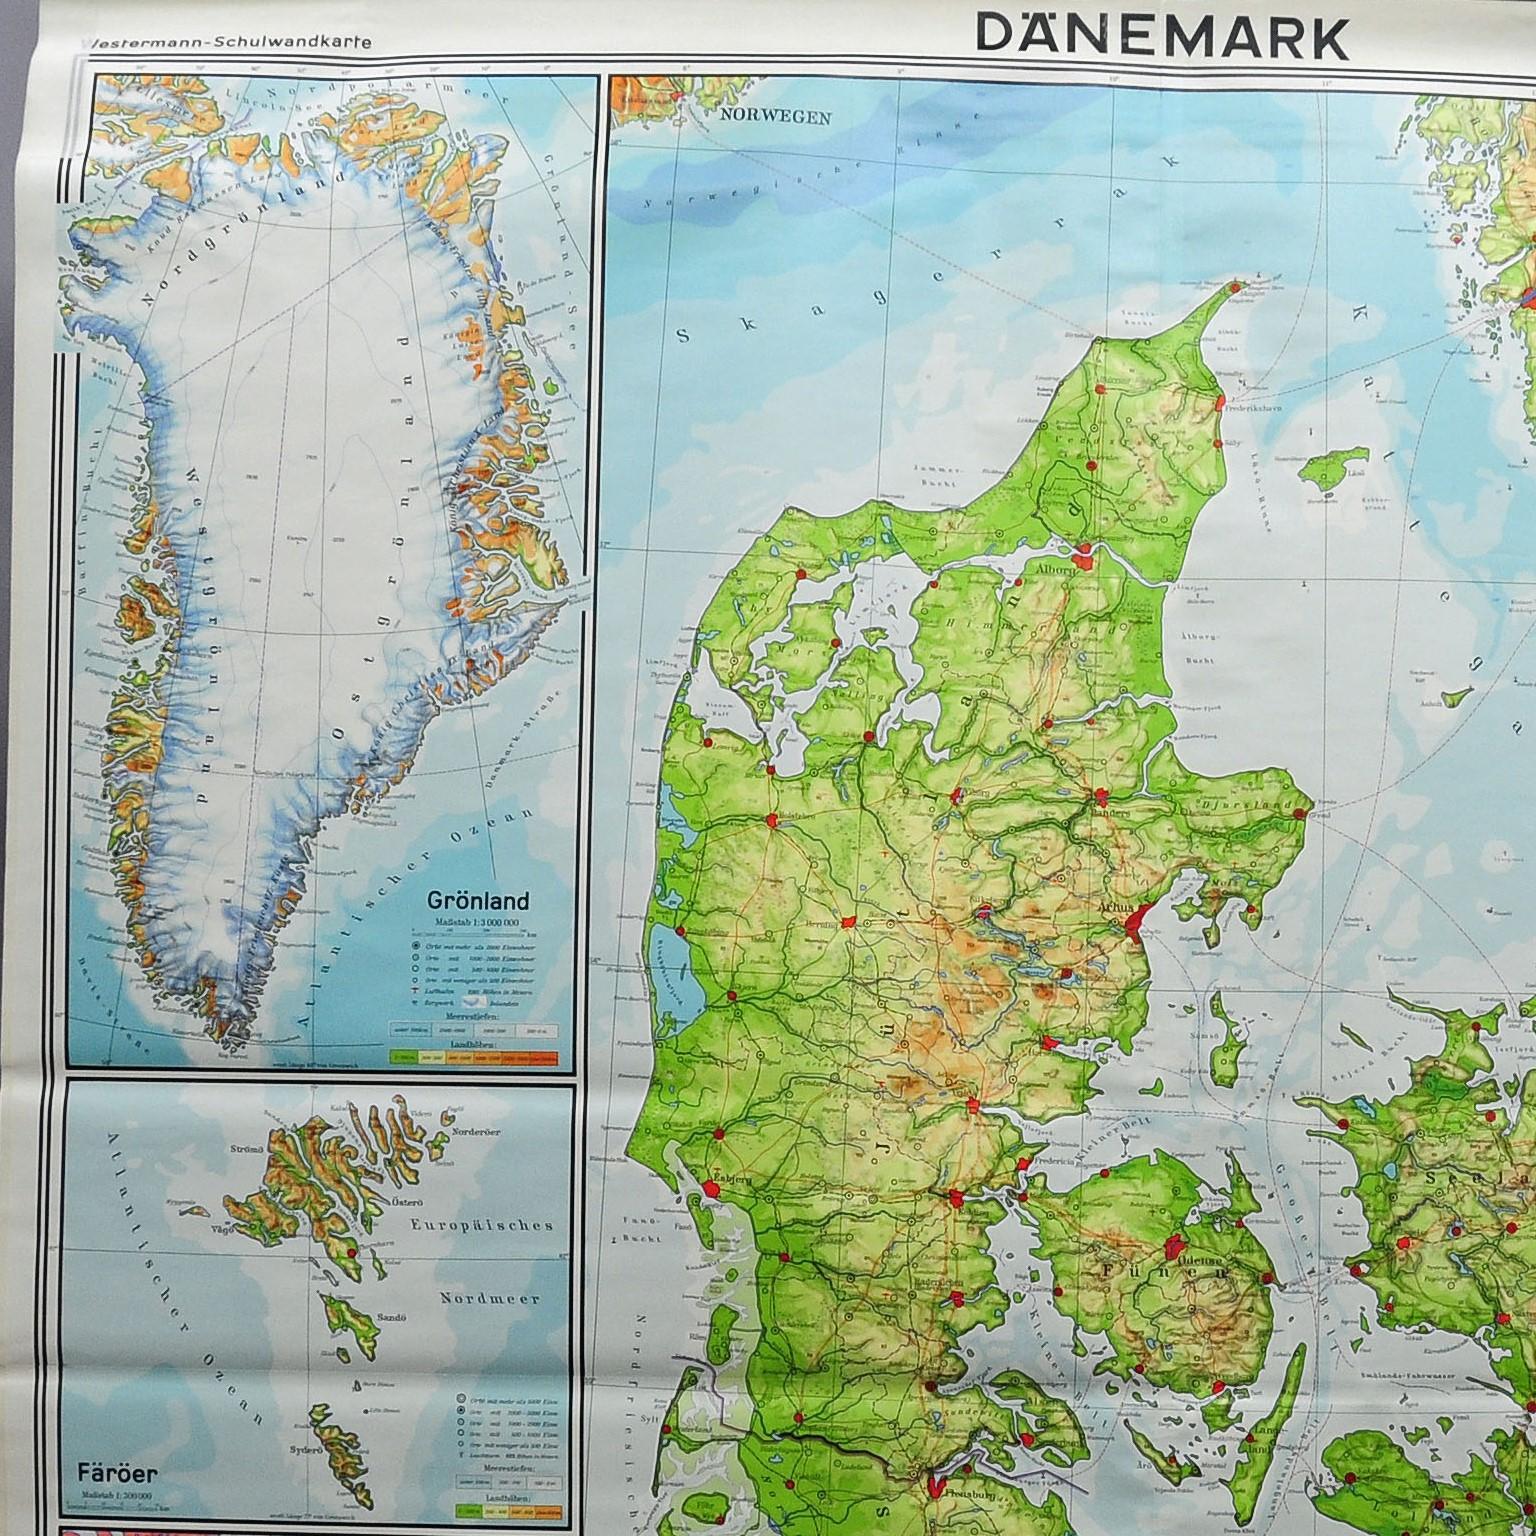 Die Vintage-Wandkarte zeigt Dänemark mit Grönland, den Färöer-Inseln und dem Nordatlantik. Herausgegeben von Westermann. Farbenfroher Druck auf mit Leinwand verstärktem Papier.

Abmessungen:
Breite 207 cm (81,50 Zoll)
Höhe 192 cm (75,59 Zoll)

Die